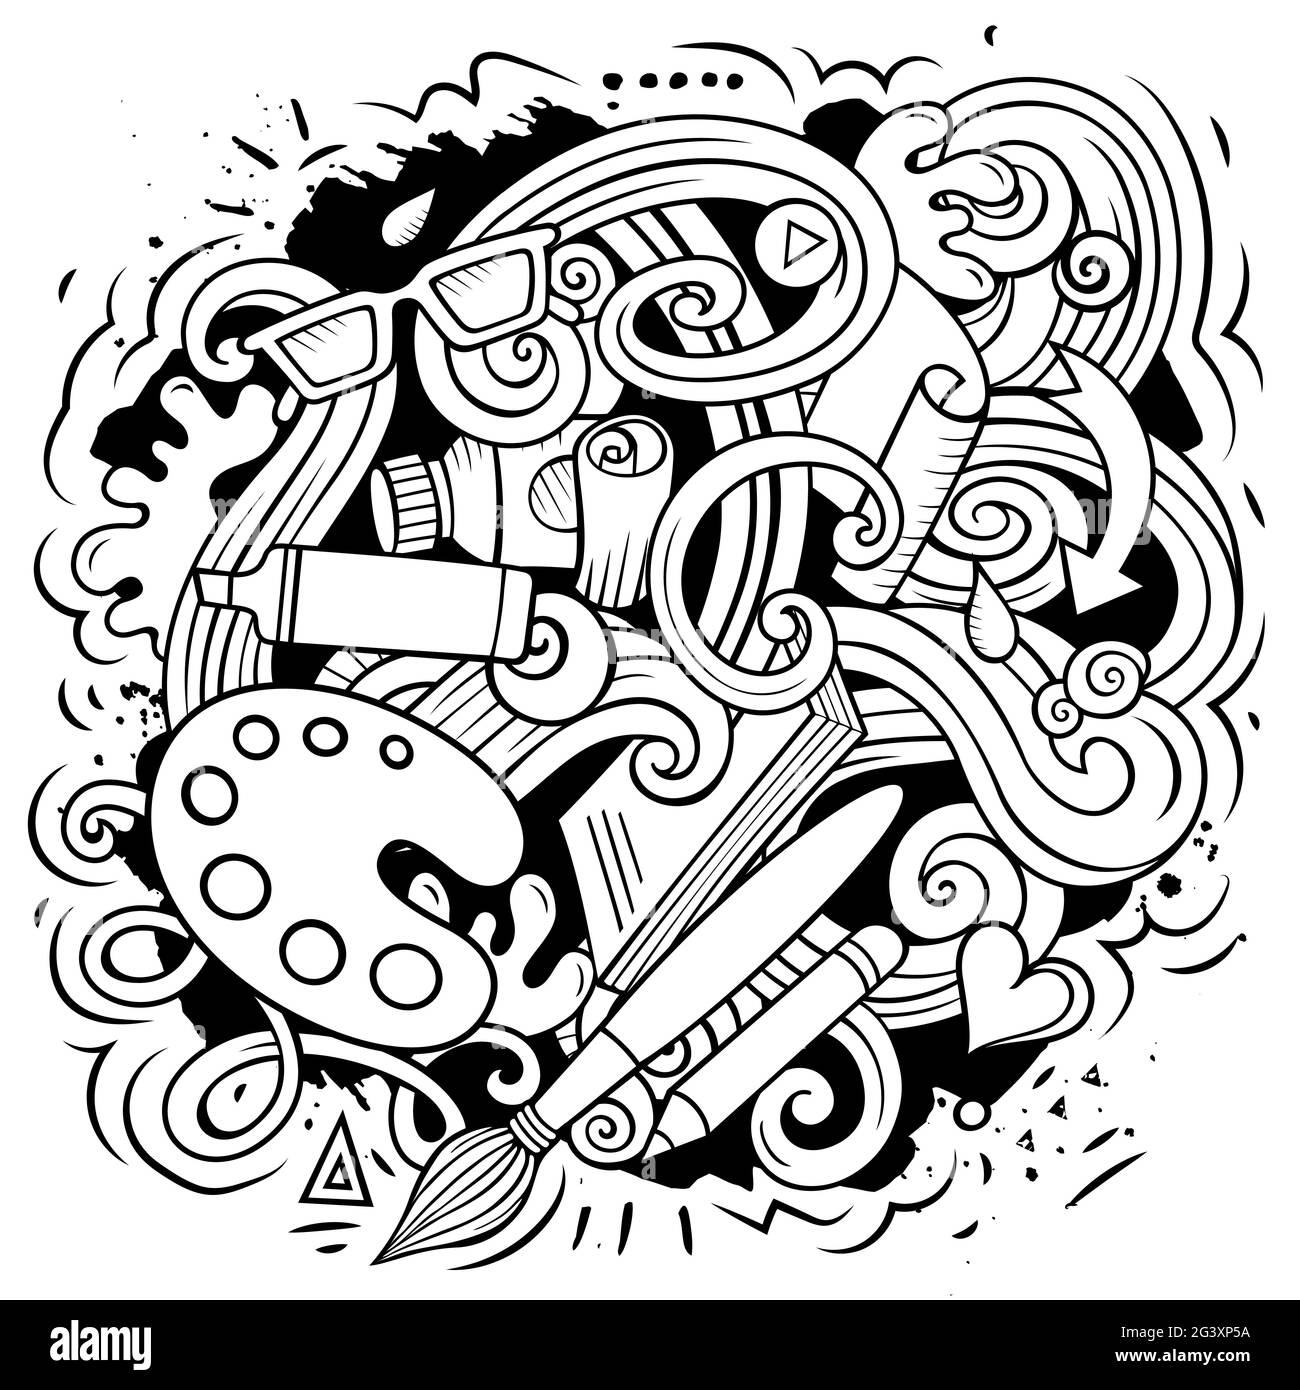 Illustrazione di doodles vettoriali d'arte. Elementi dell'artista e oggetti sfondo cartoon. Un'immagine divertente e di schizzo. Tutti gli elementi sono separati Illustrazione Vettoriale